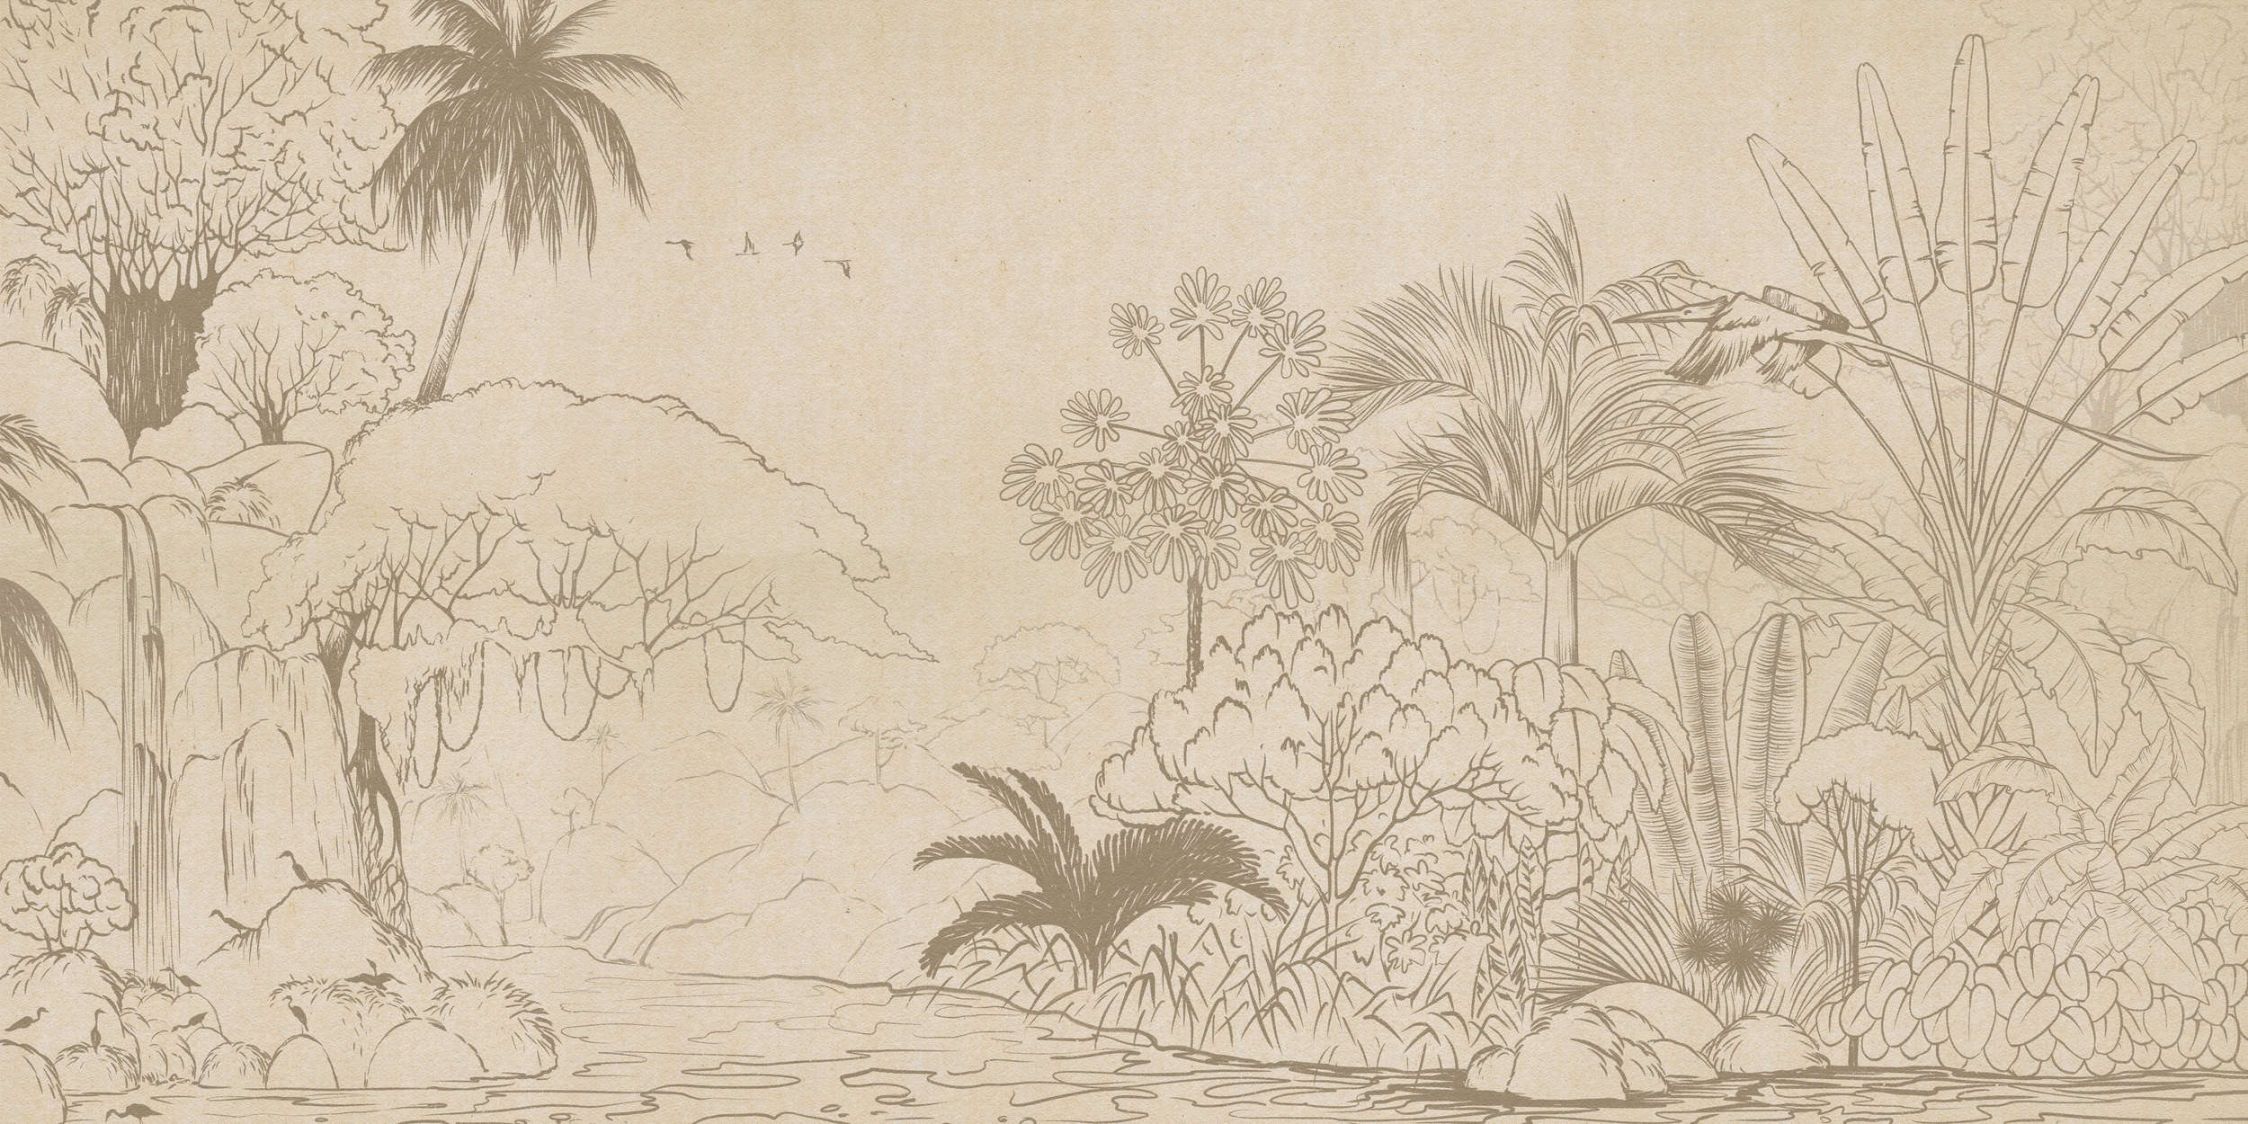             Papel pintado fotográfico »oasis« - Selva en estilo dibujo con aspecto de papel hecho a mano - tejido sin tejer mate, liso
        